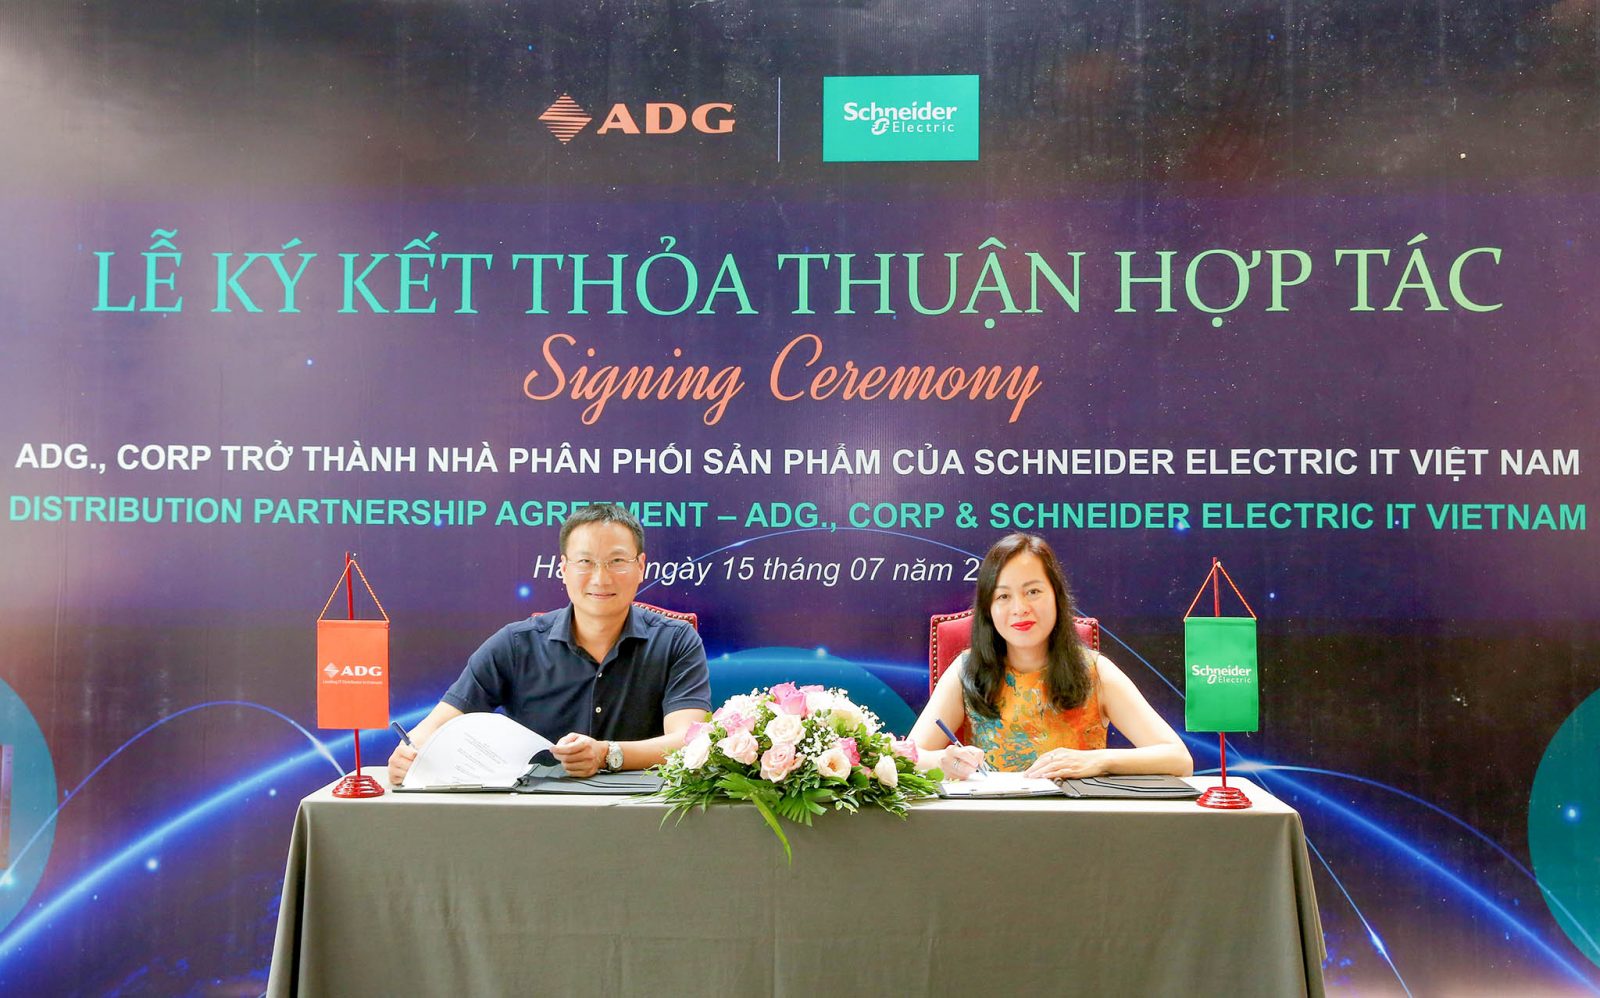 ADG chính thức trở thành nhà phân phối sản phẩm của Schneider Electric IT Việt Nam